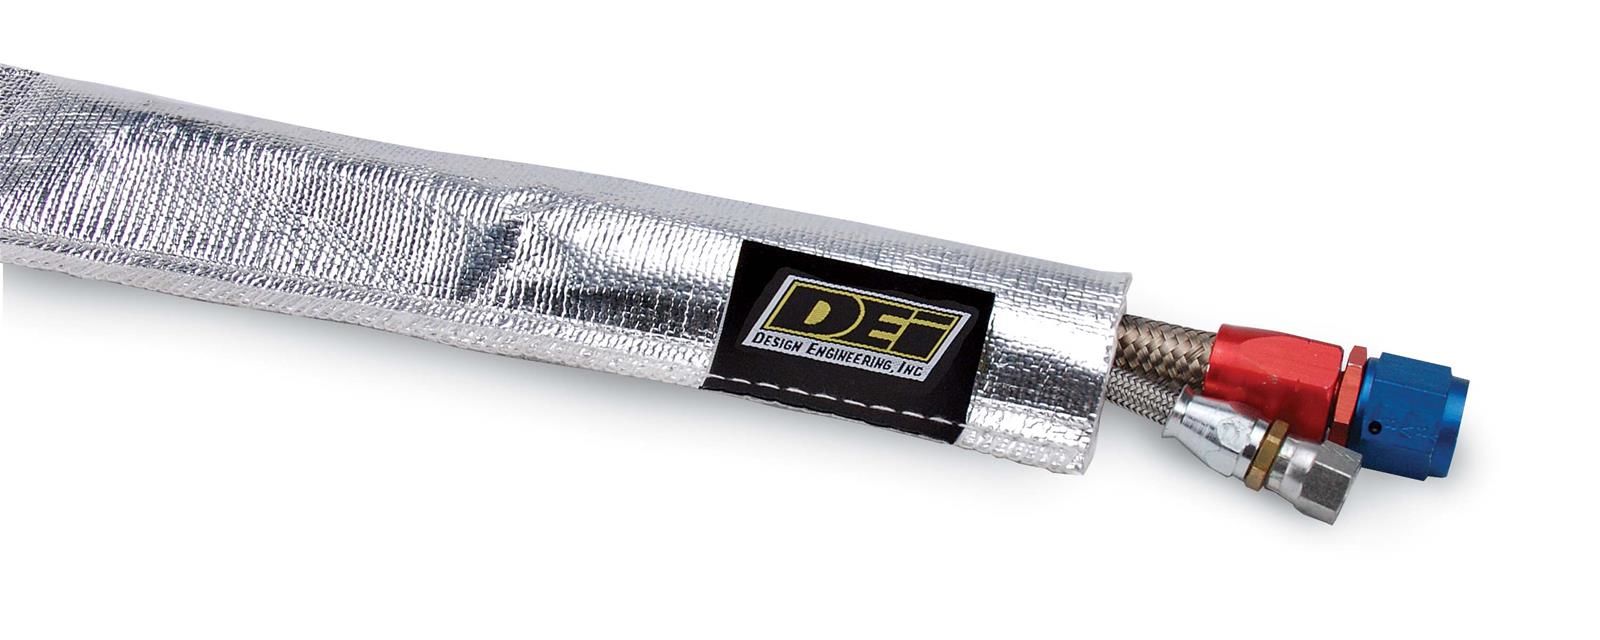 DEI 10404 - Heat Sheath, Aluminized Sleeving 1.25 in ID x 3ft